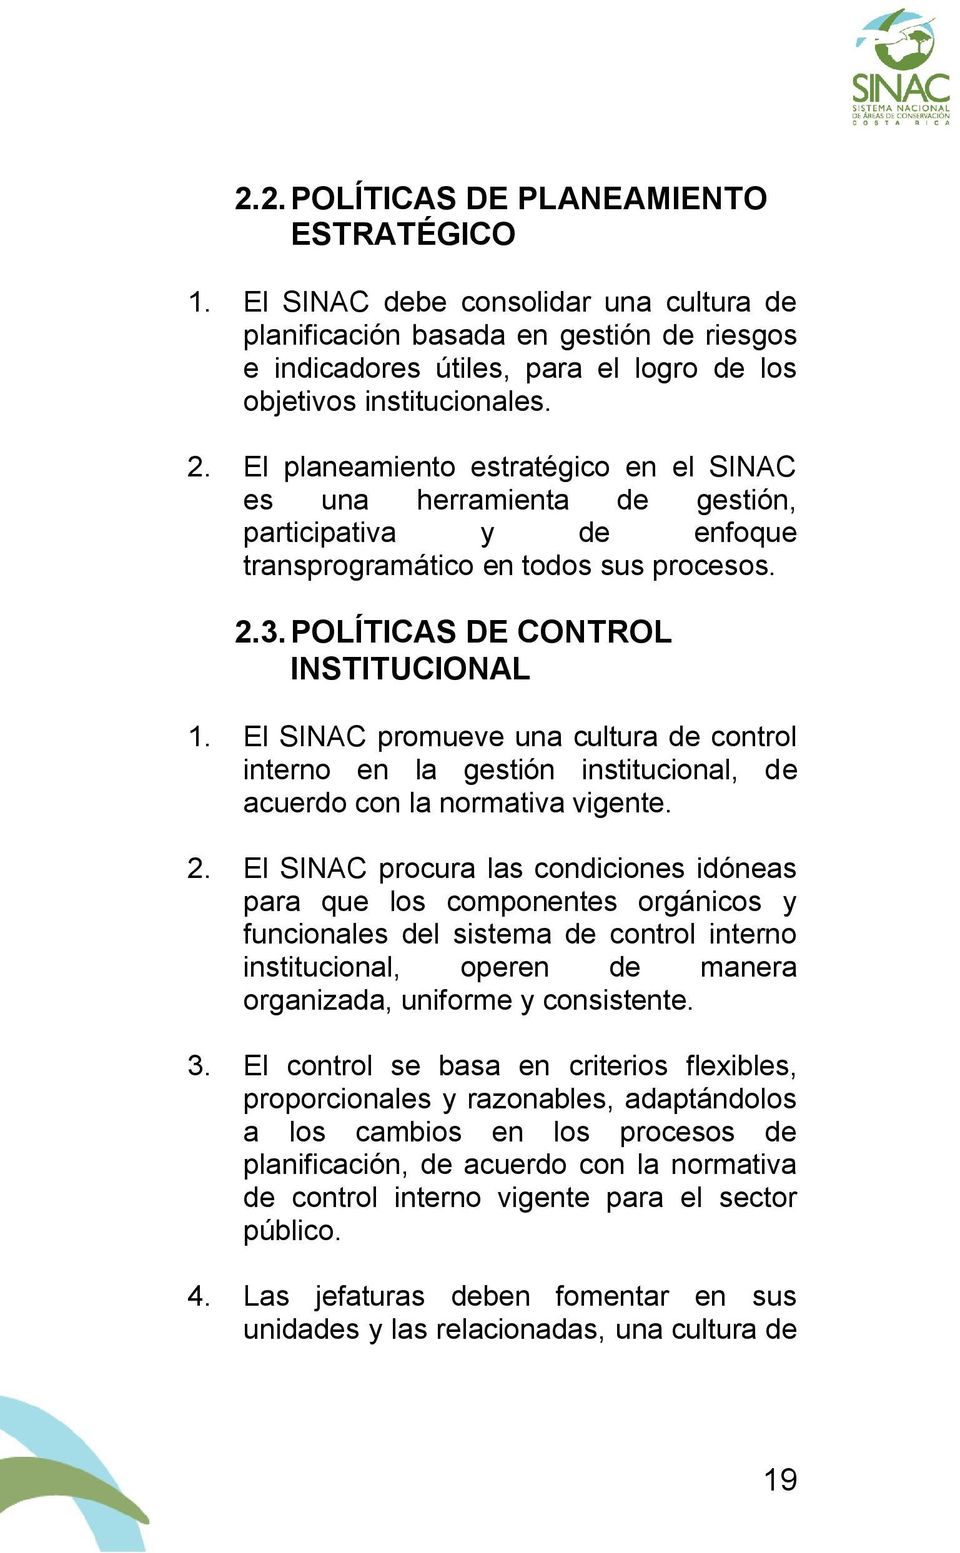 El SINAC promueve una cultura de control interno en la gestión institucional, de acuerdo con la normativa vigente. 2.